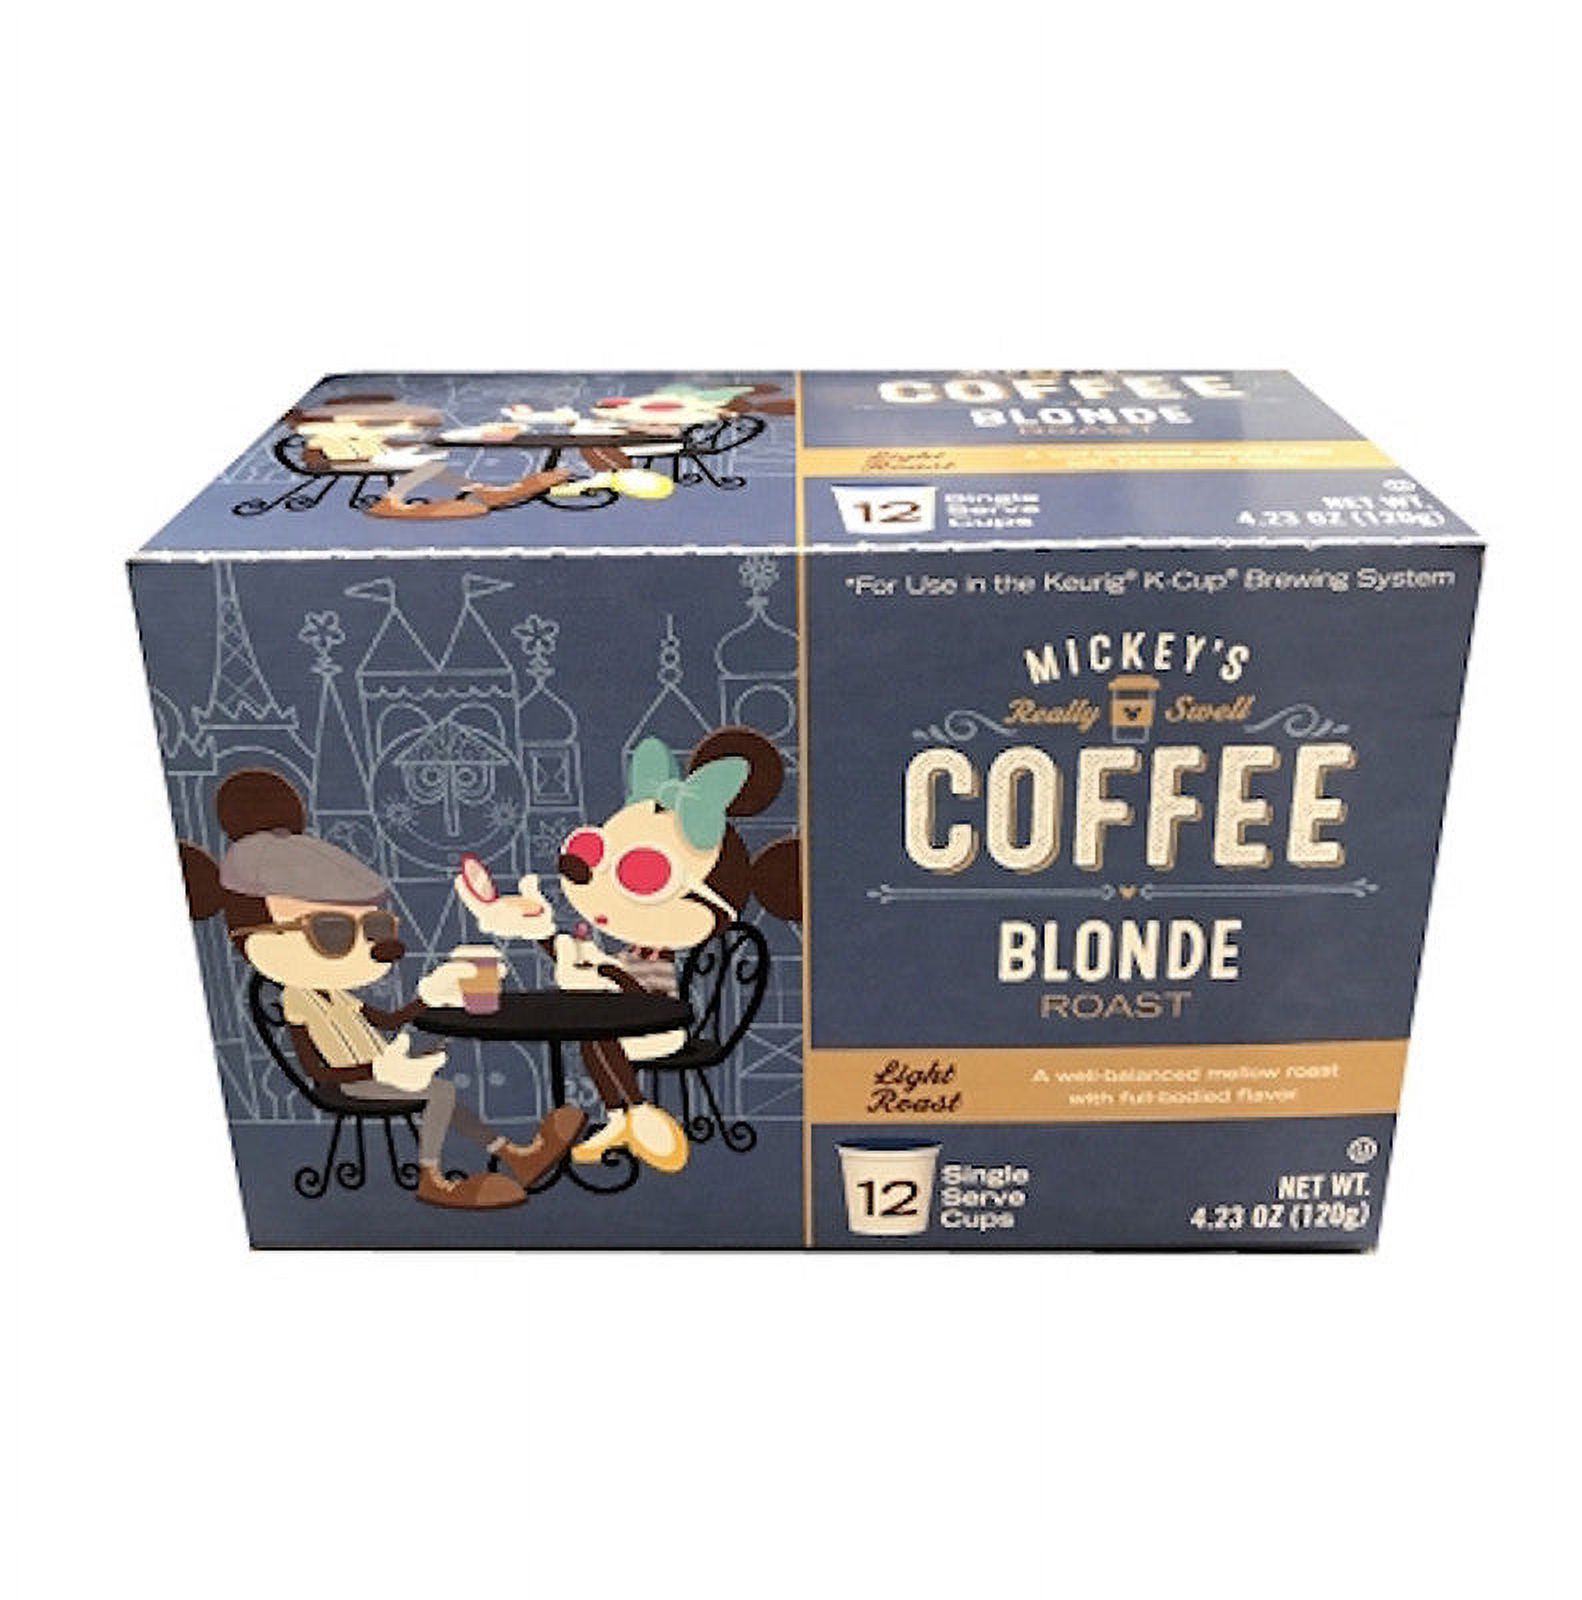 Disney Mickey's Coffee Blonde Roast Light Roast 12 Keurig K-Cup New Sealed - image 2 of 3